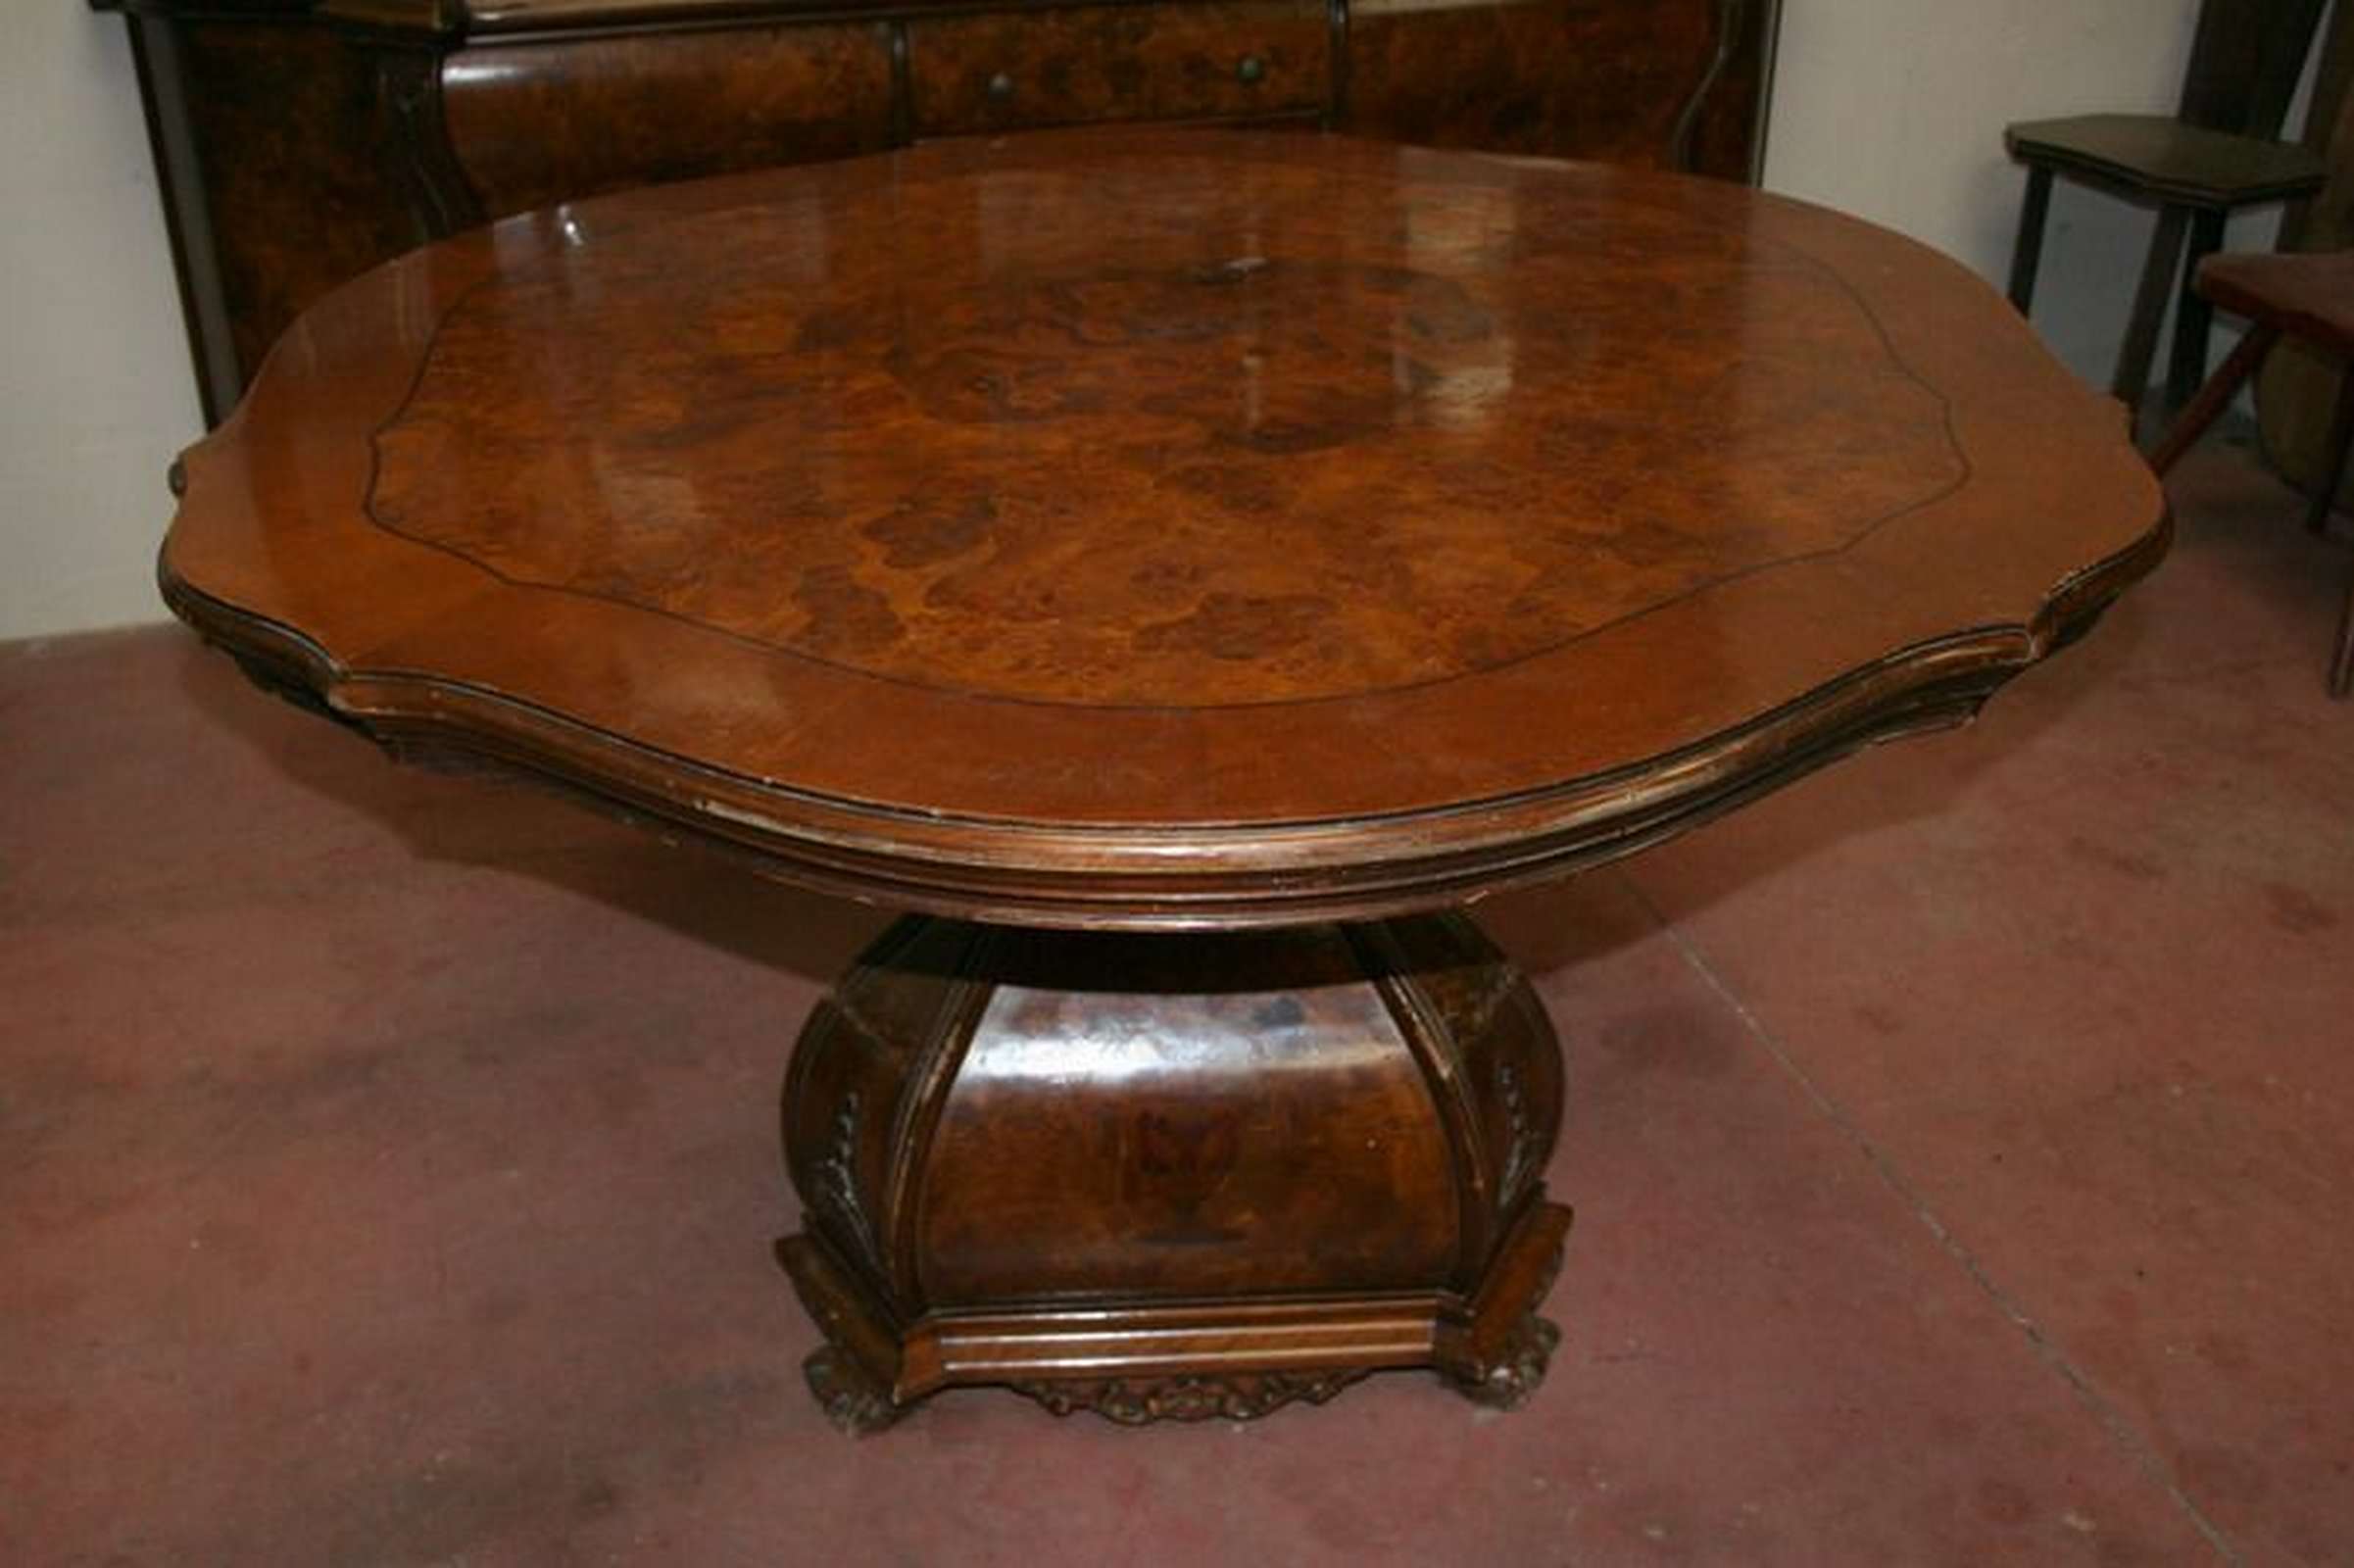 Antico tavolo in legno. Epoca fine 1800. - Tavoli Antichi - Mobili antichi - Prodotti - Antichità Fiorillo